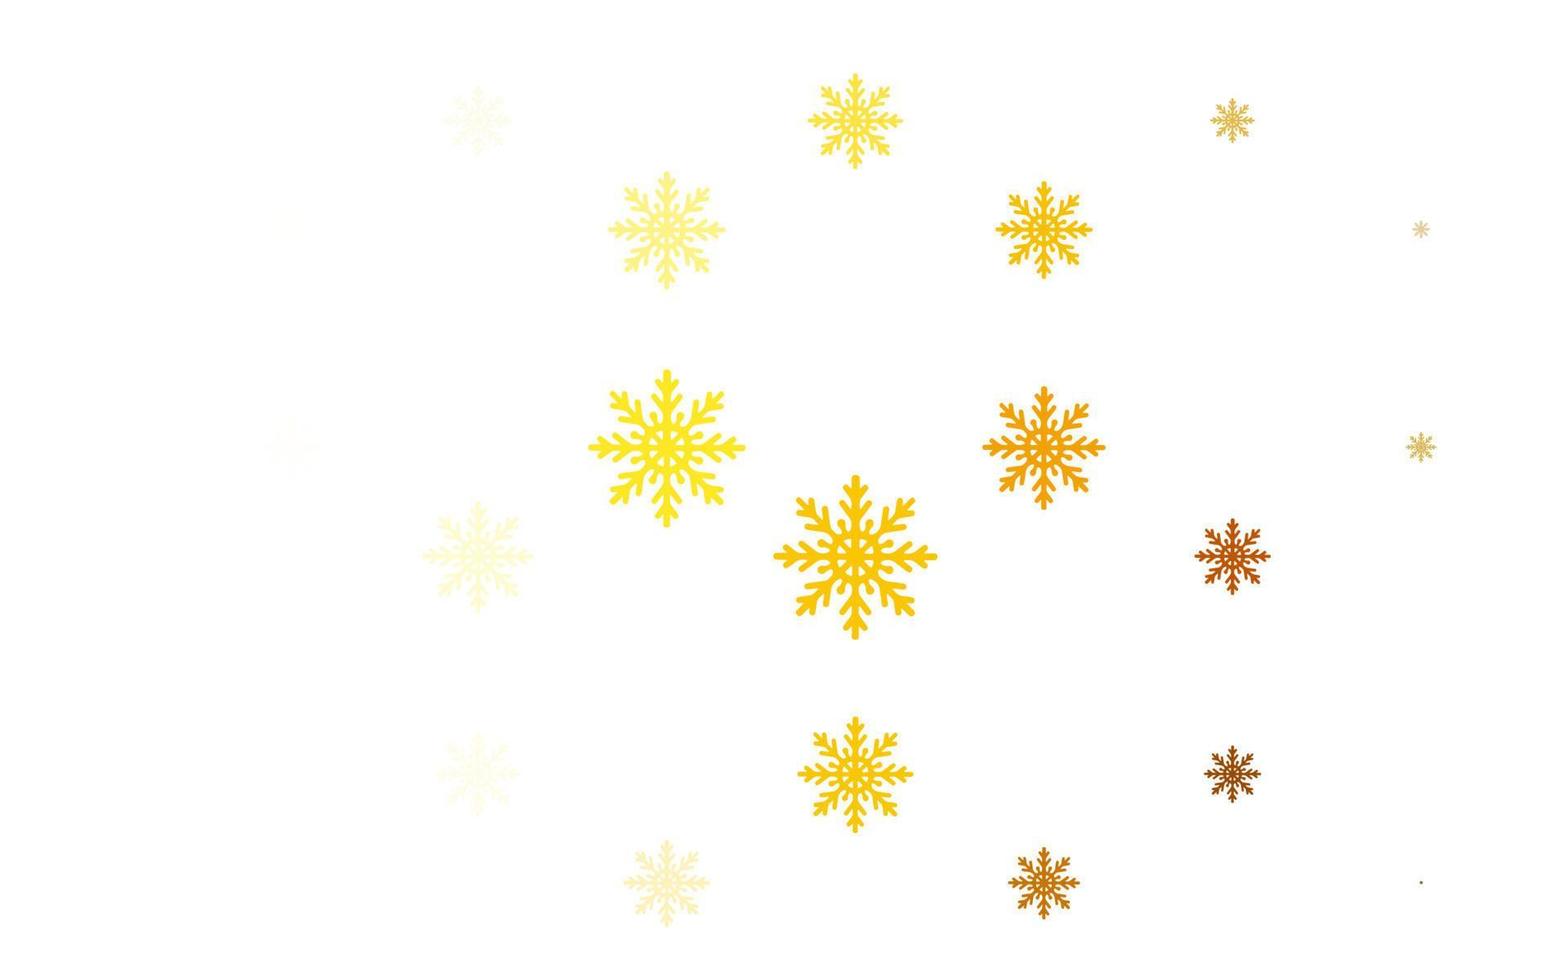 layout vettoriale giallo chiaro, arancione con fiocchi di neve luminosi.